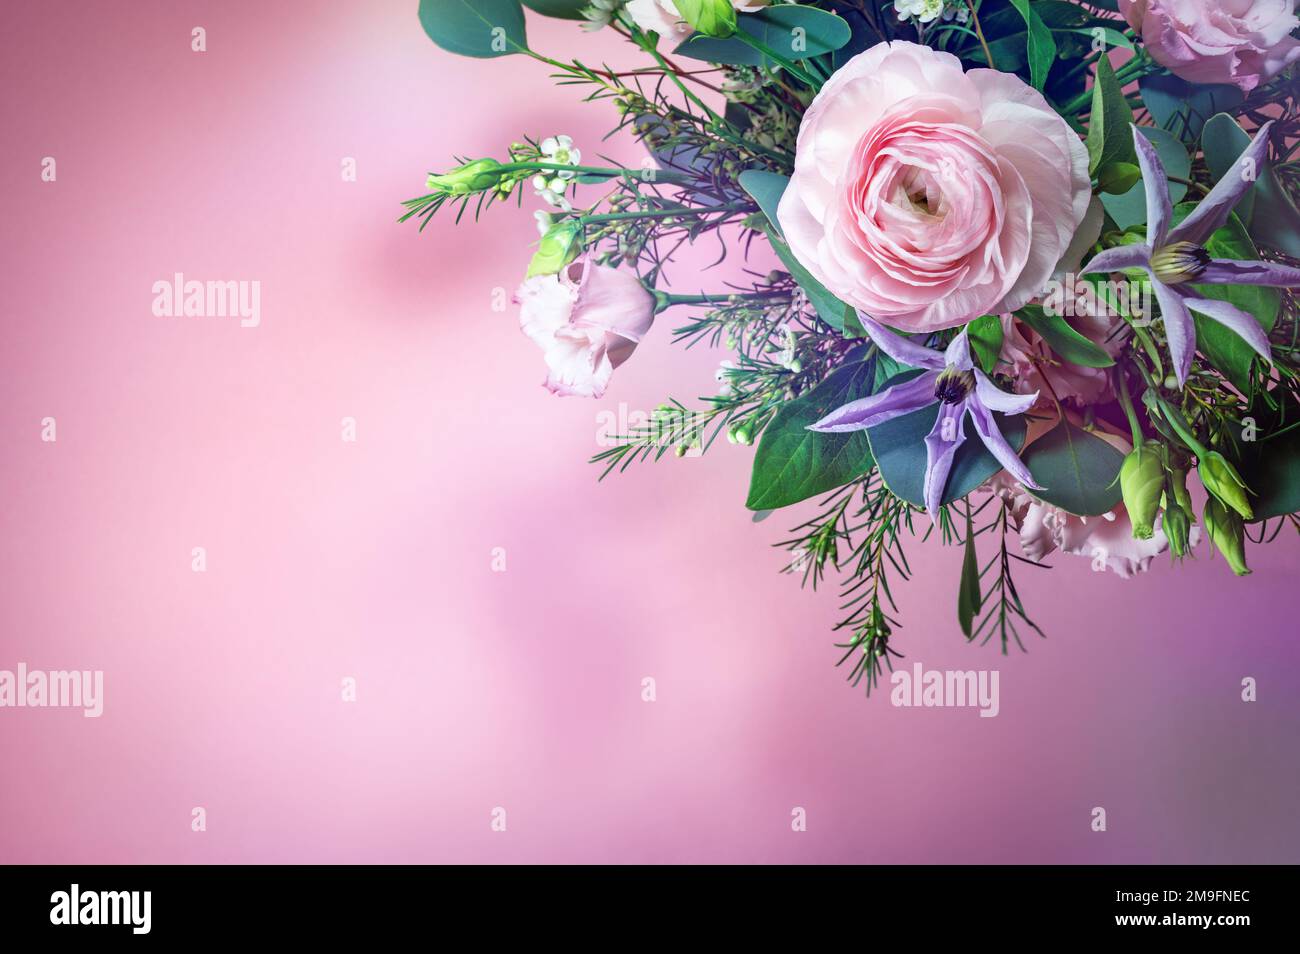 Blumenstrauß mit rosa und blauen Blumen in der Ecke auf pinkfarbenem Hintergrund, Grußkarte für Feiertage wie Valentinstag oder Muttertag, Kopierbereich, ausgewählt Stockfoto